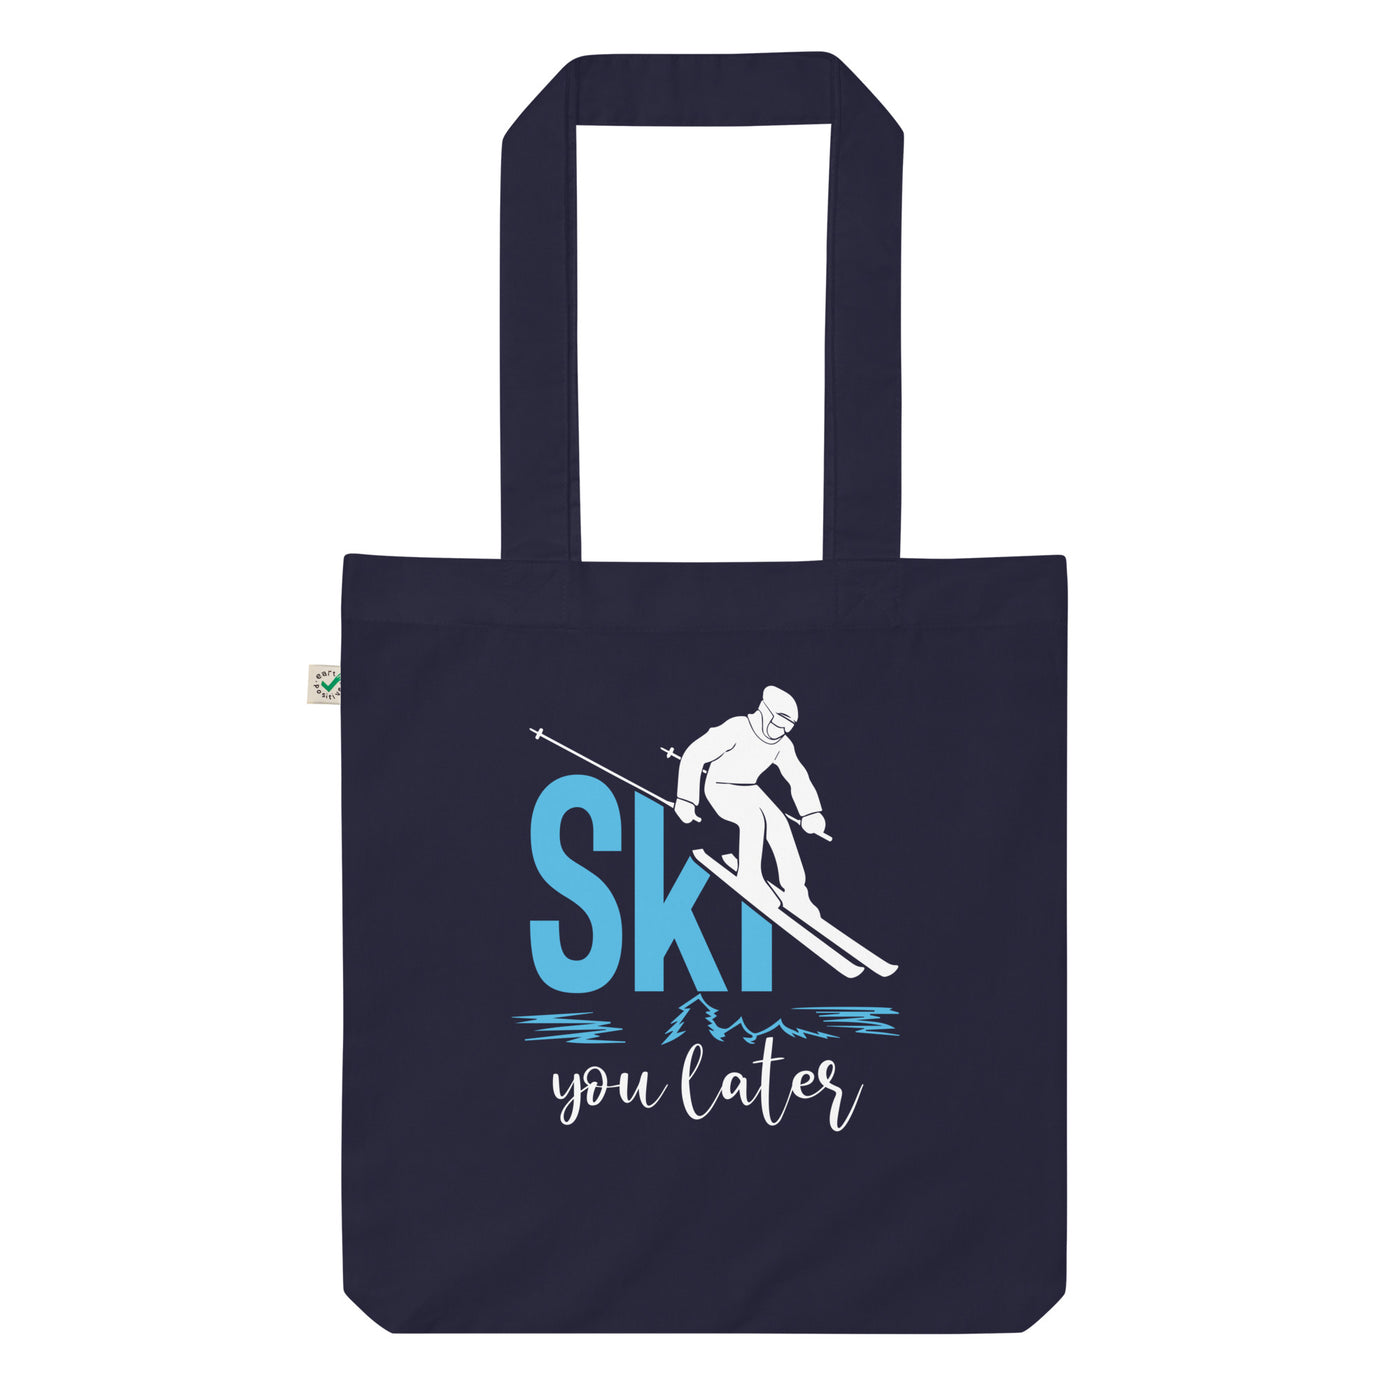 Ski You Later - (S.K) - Organic Einkaufstasche klettern Navy